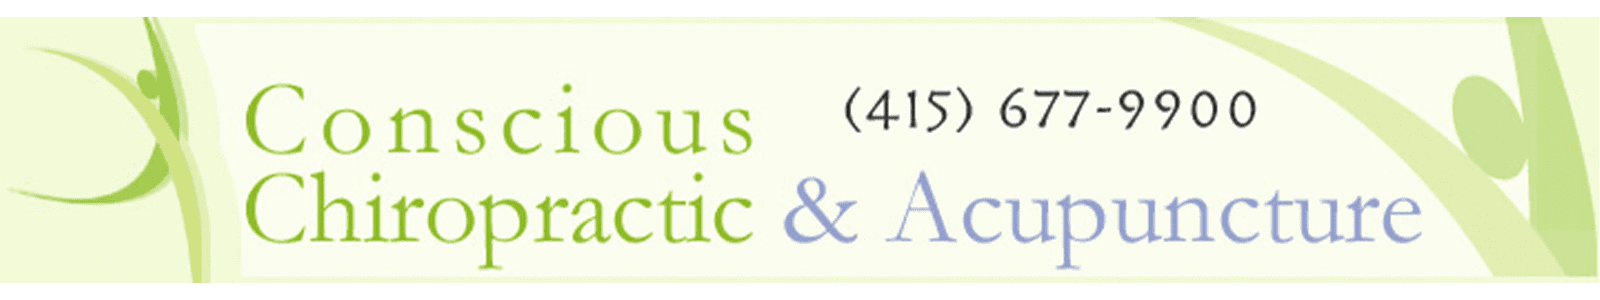 Conscious Chiropractic & Acupuncture